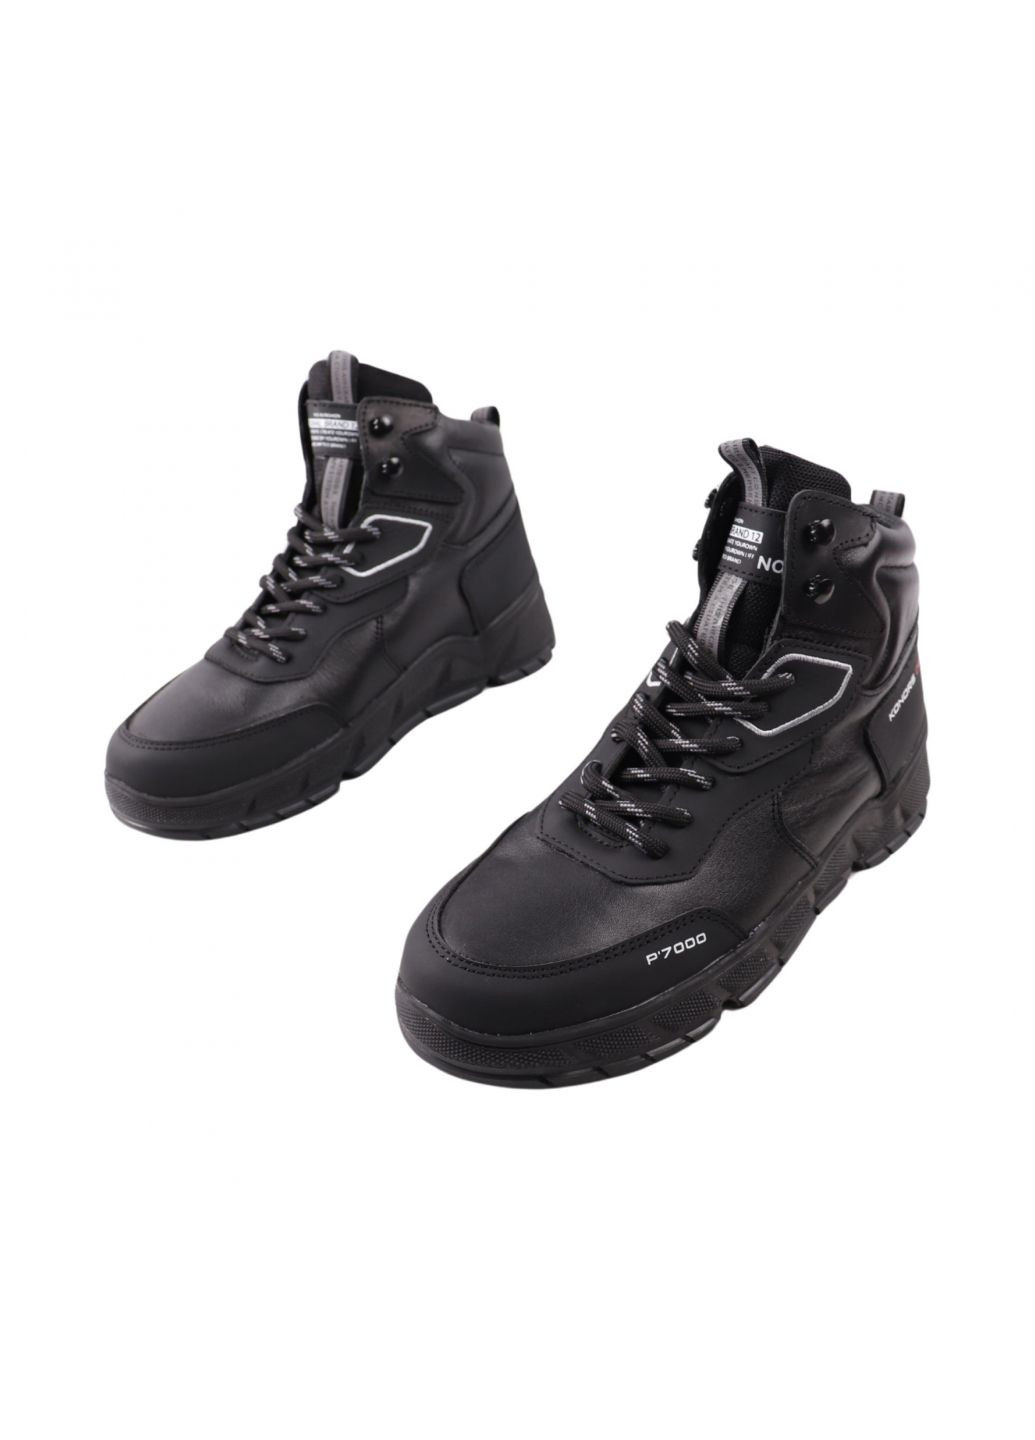 Черные ботинки мужские черные натуральная кожа Konors